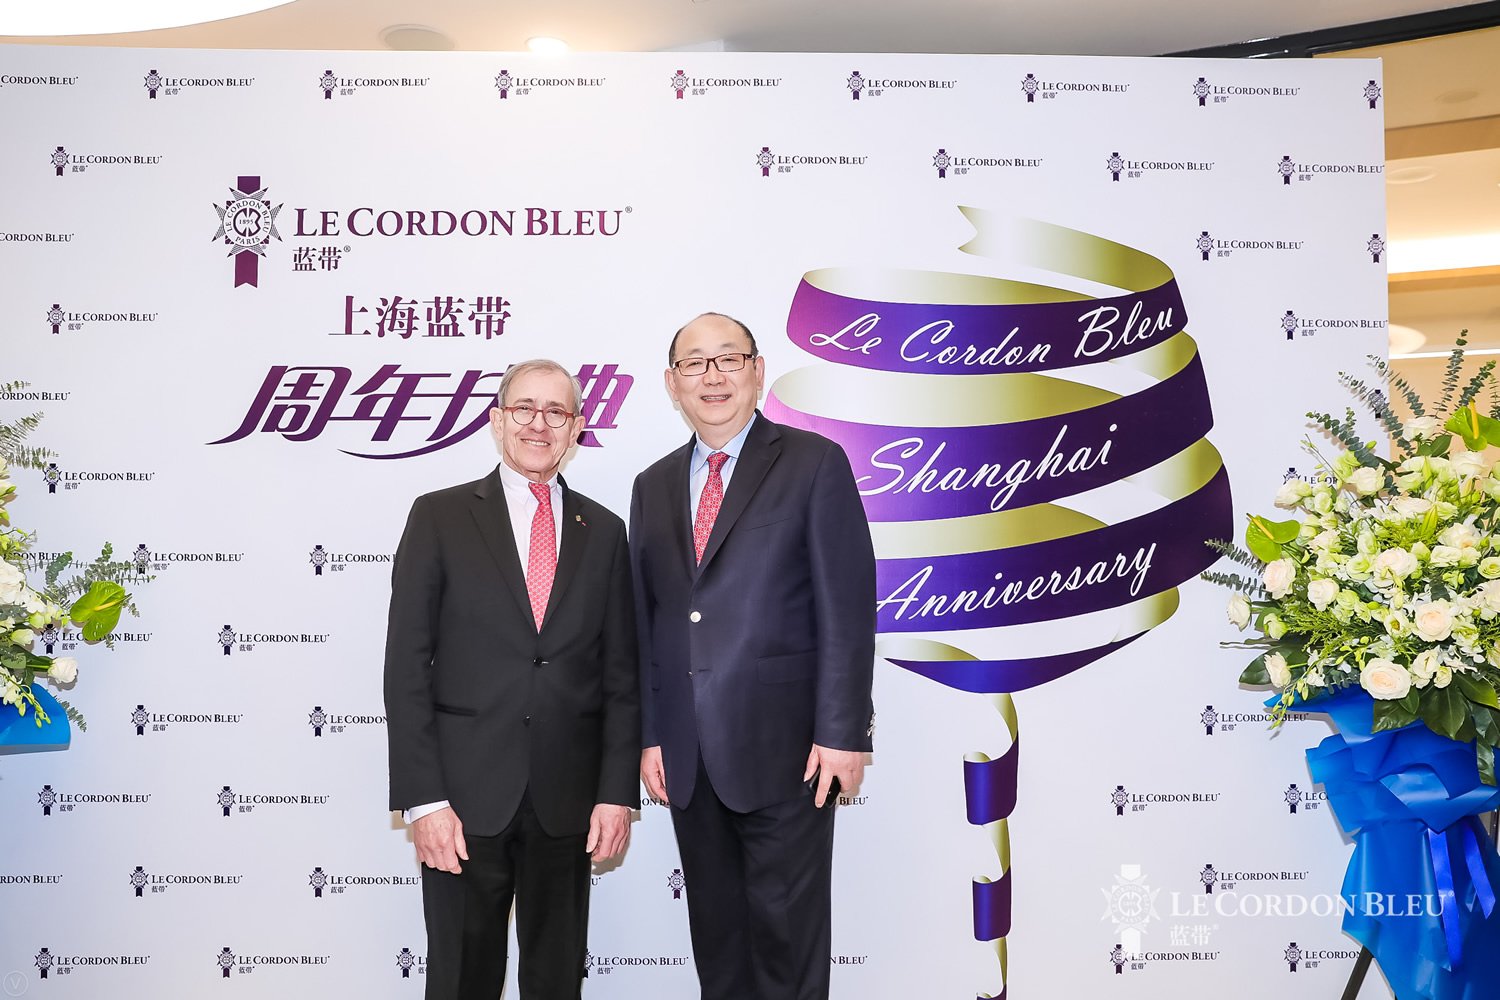 Le Cordon Bleu Shanghai Celebrates their Fourth Anniversary